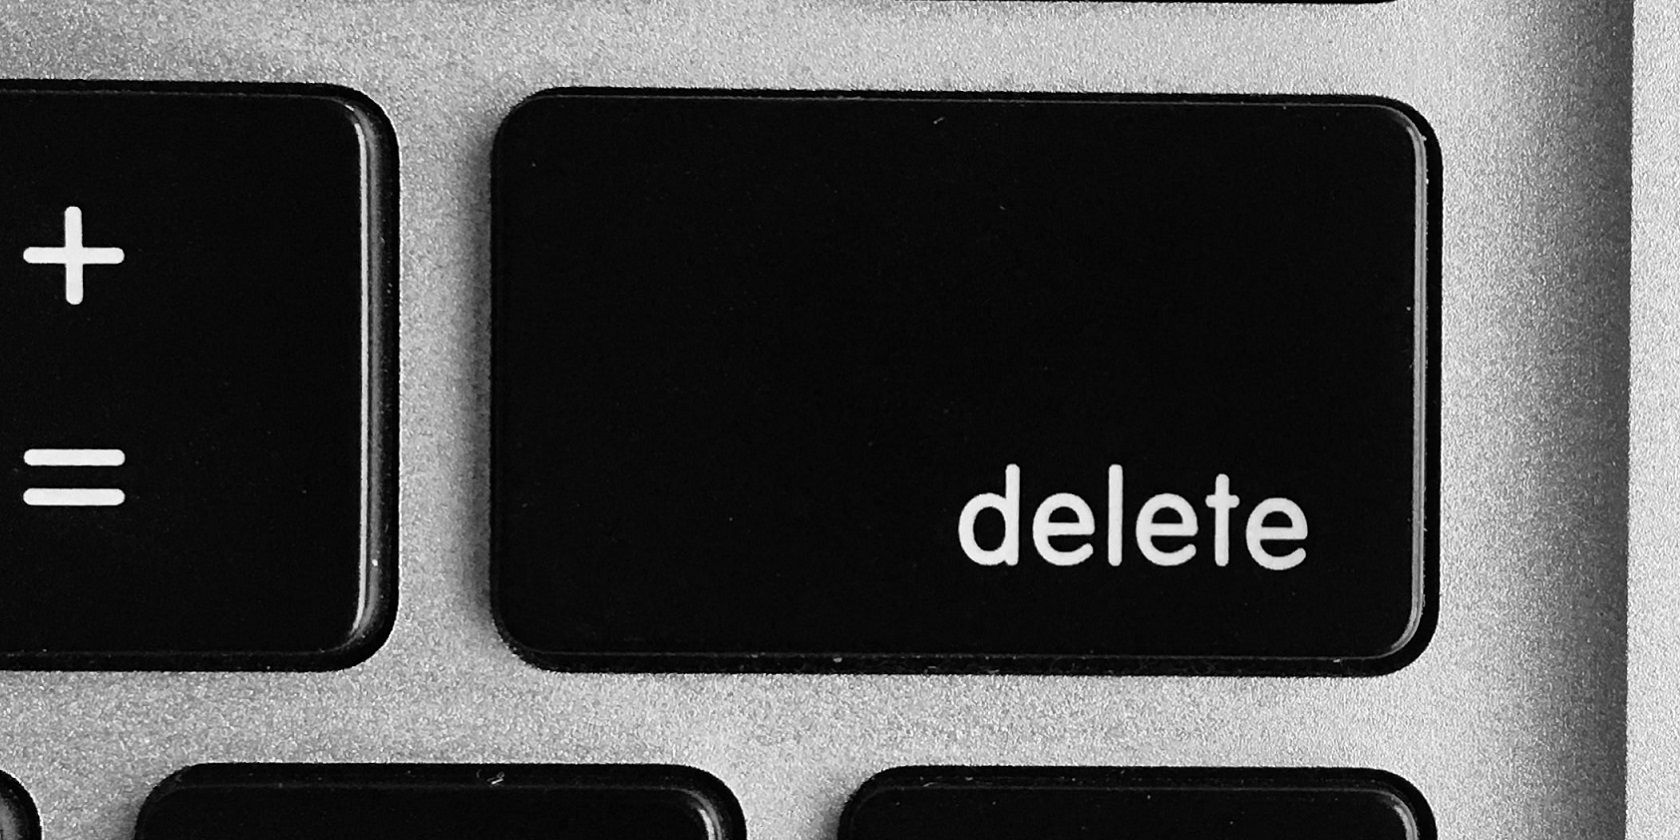 Del button